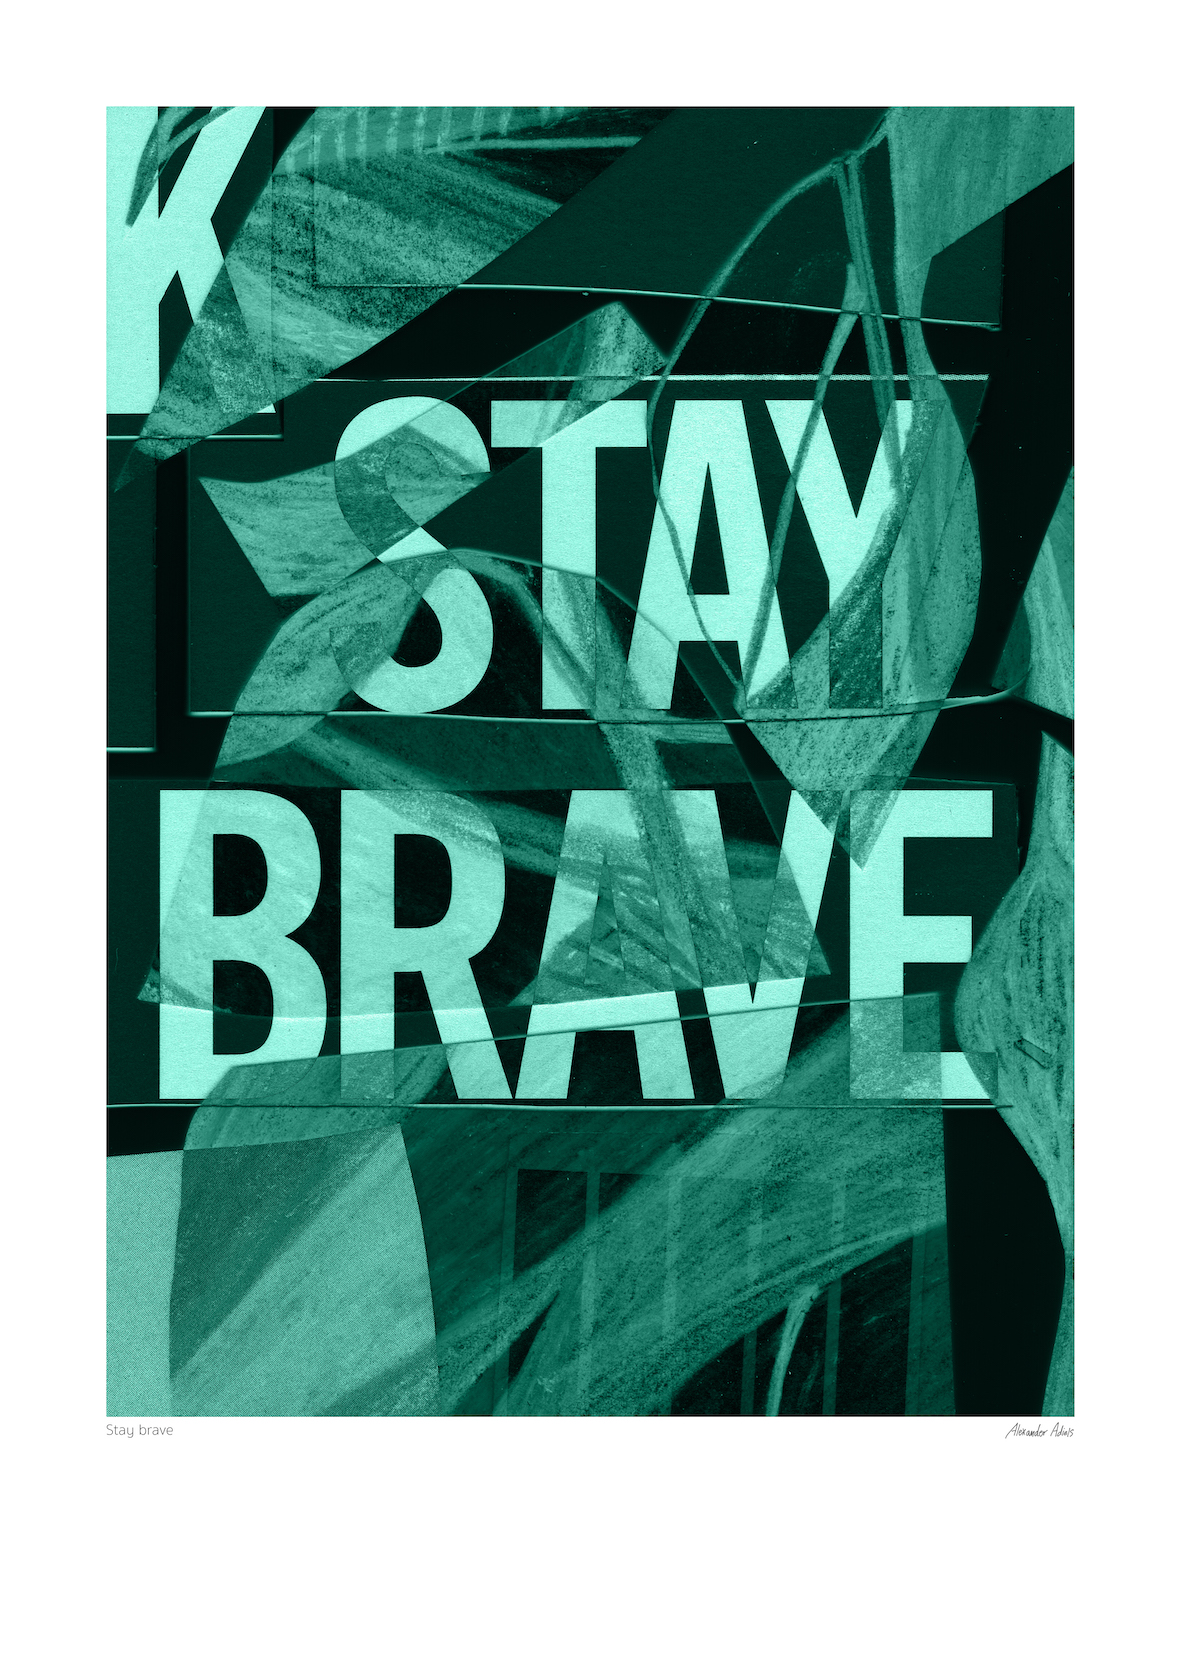 Stay brave 2